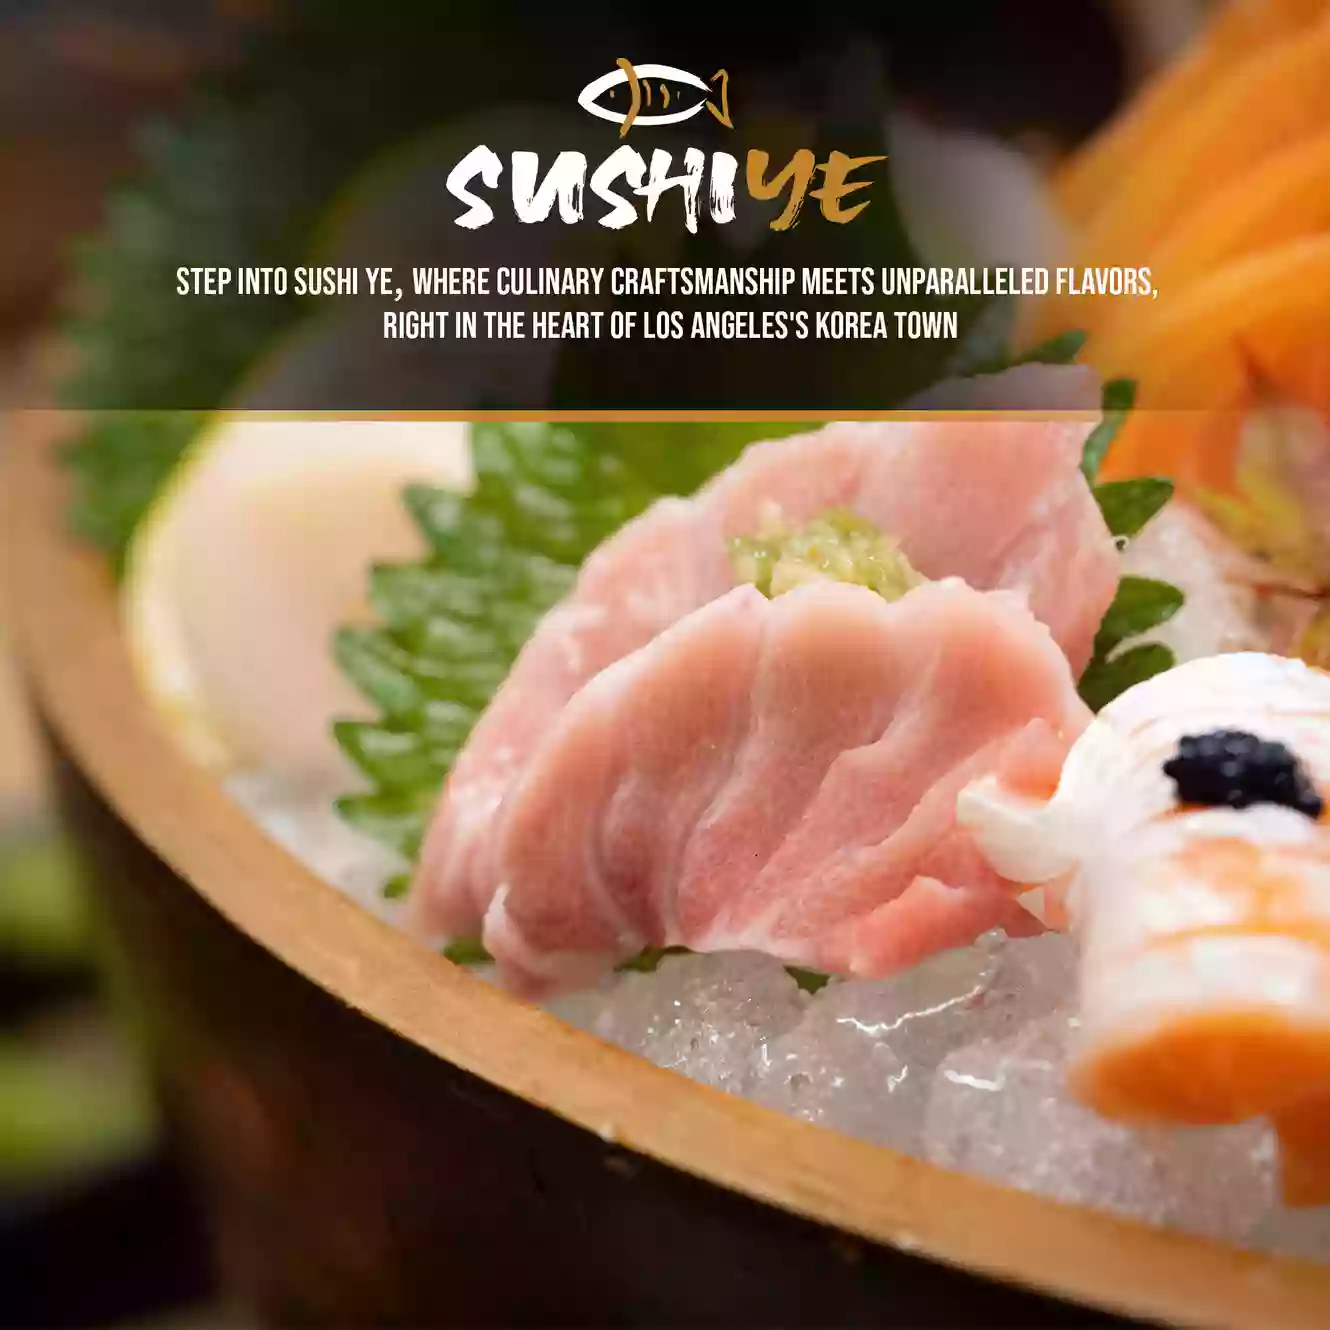 Sushi Ye